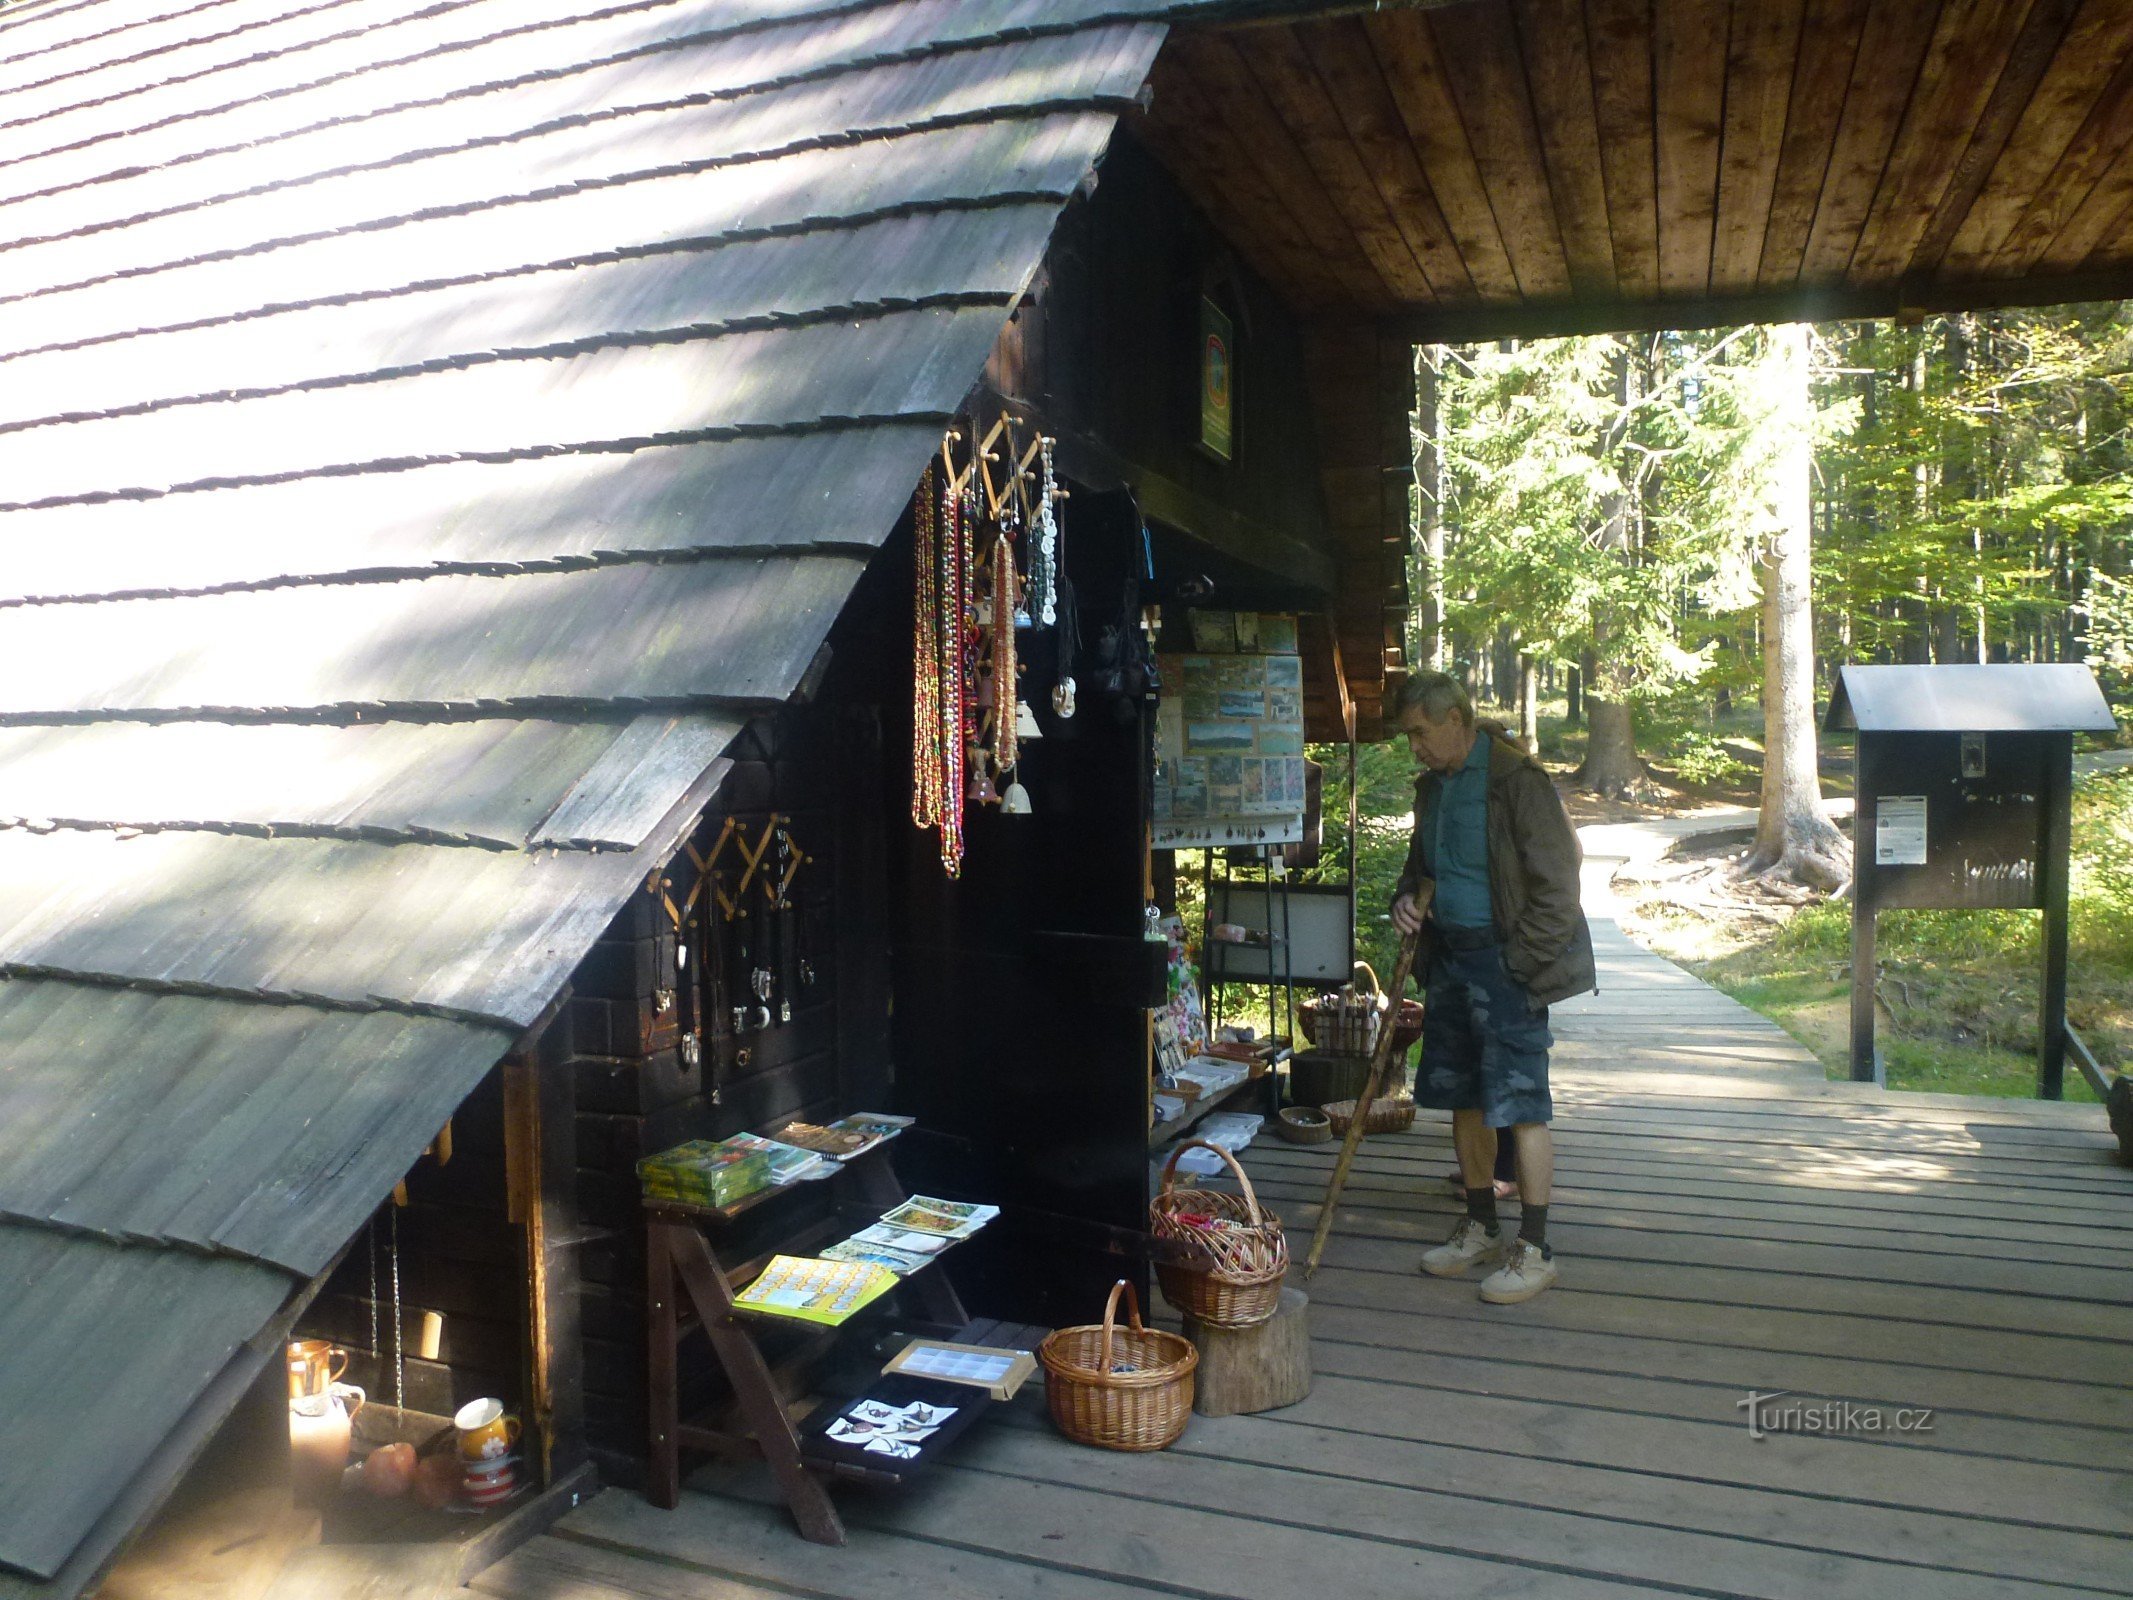 Дерев'яна будка, де туристи, крім квитків, можуть придбати ряд сувенірів